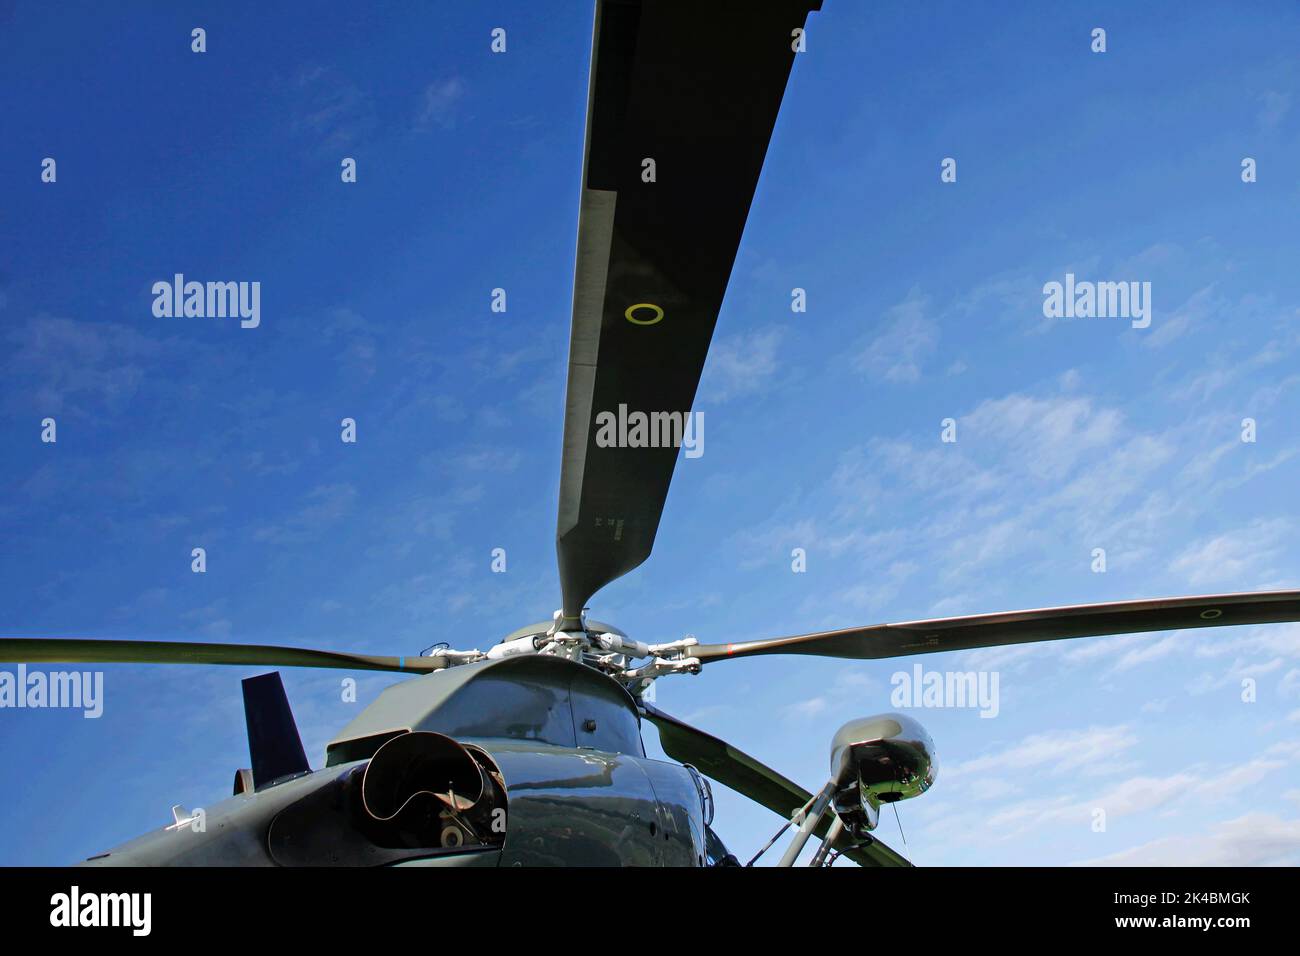 Hubschrauber vor blauem Himmel in Froschperspektive Stock Photo